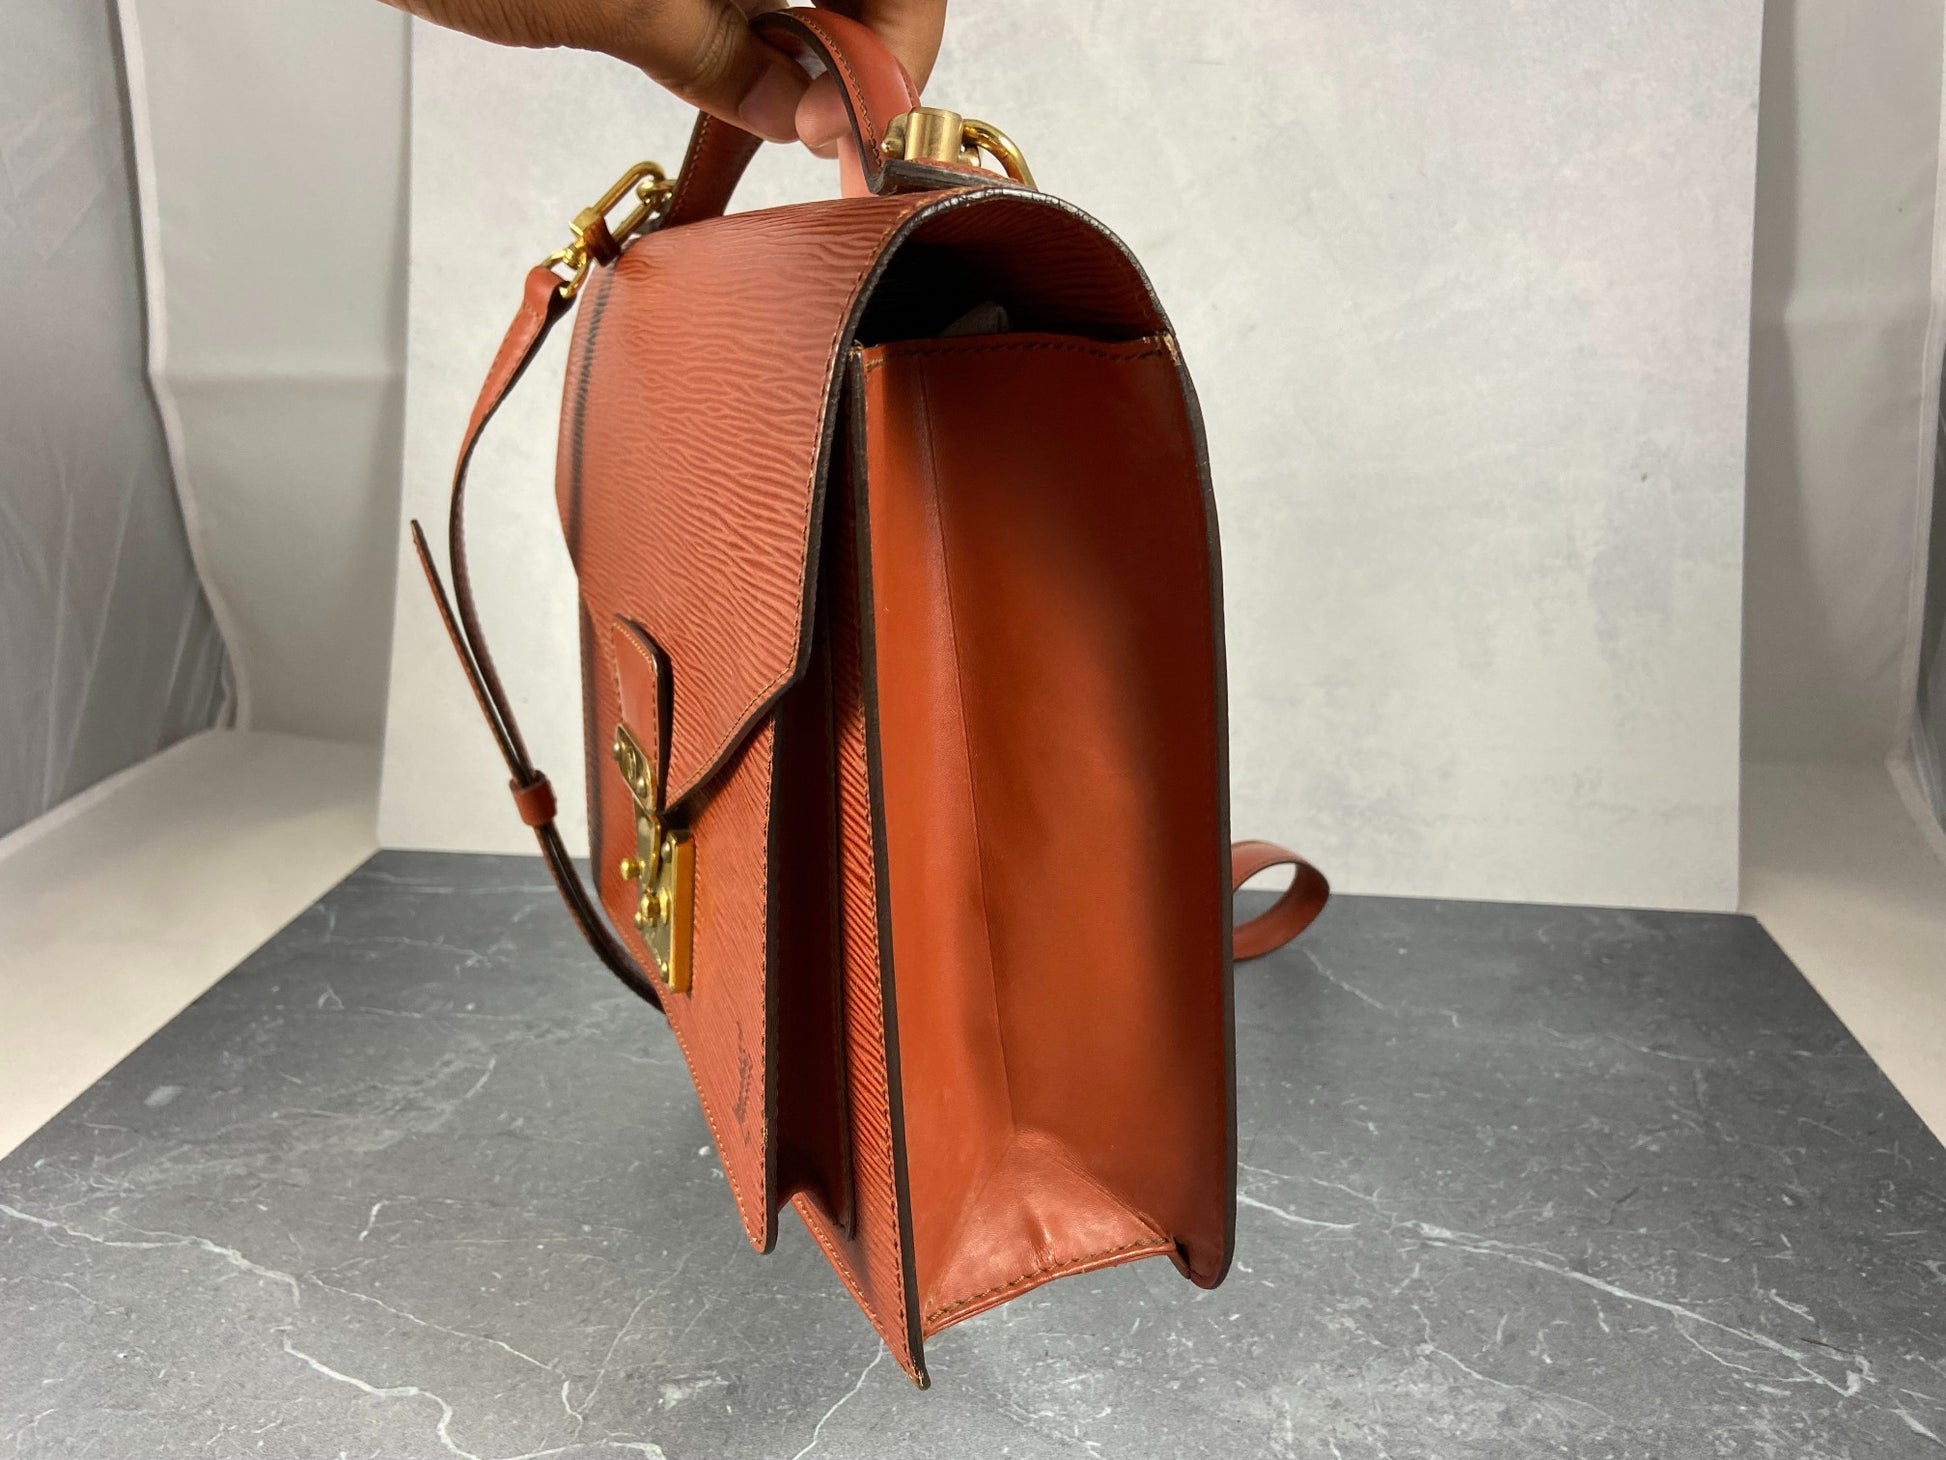 Louis Vuitton Monceau Shoulder Bag in Orange EPI Leather